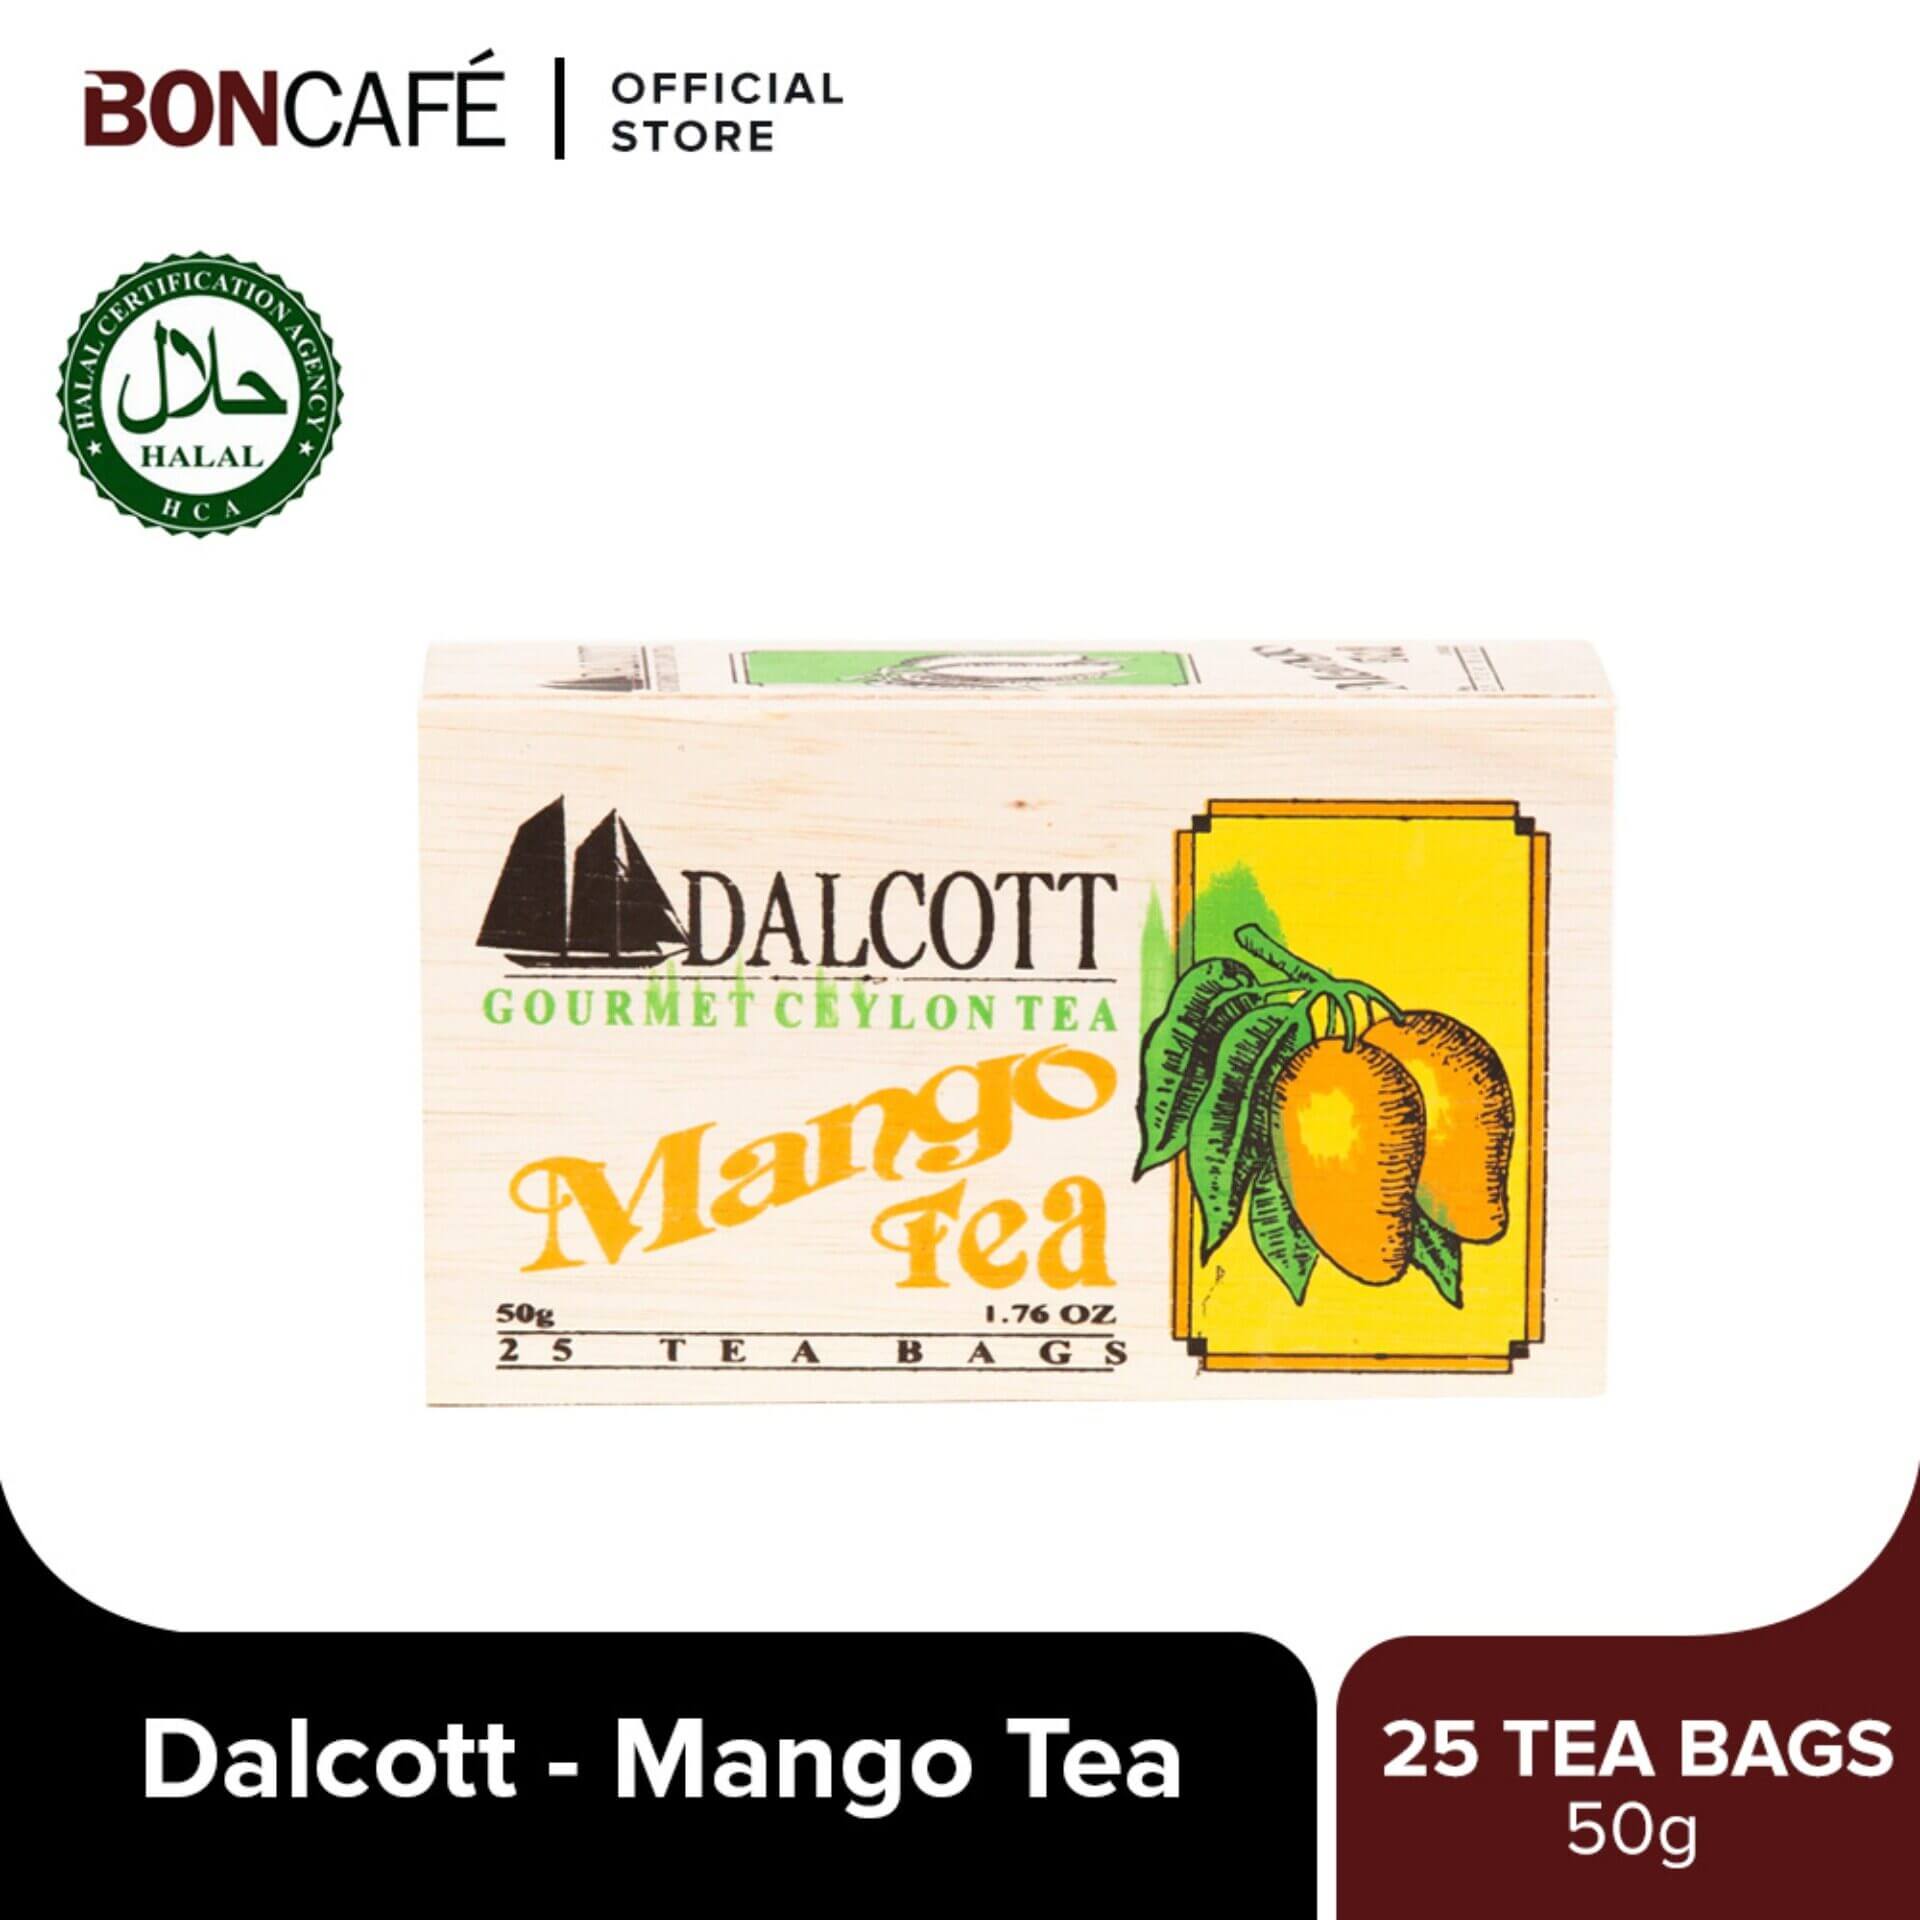 Dalcott Mango Tea